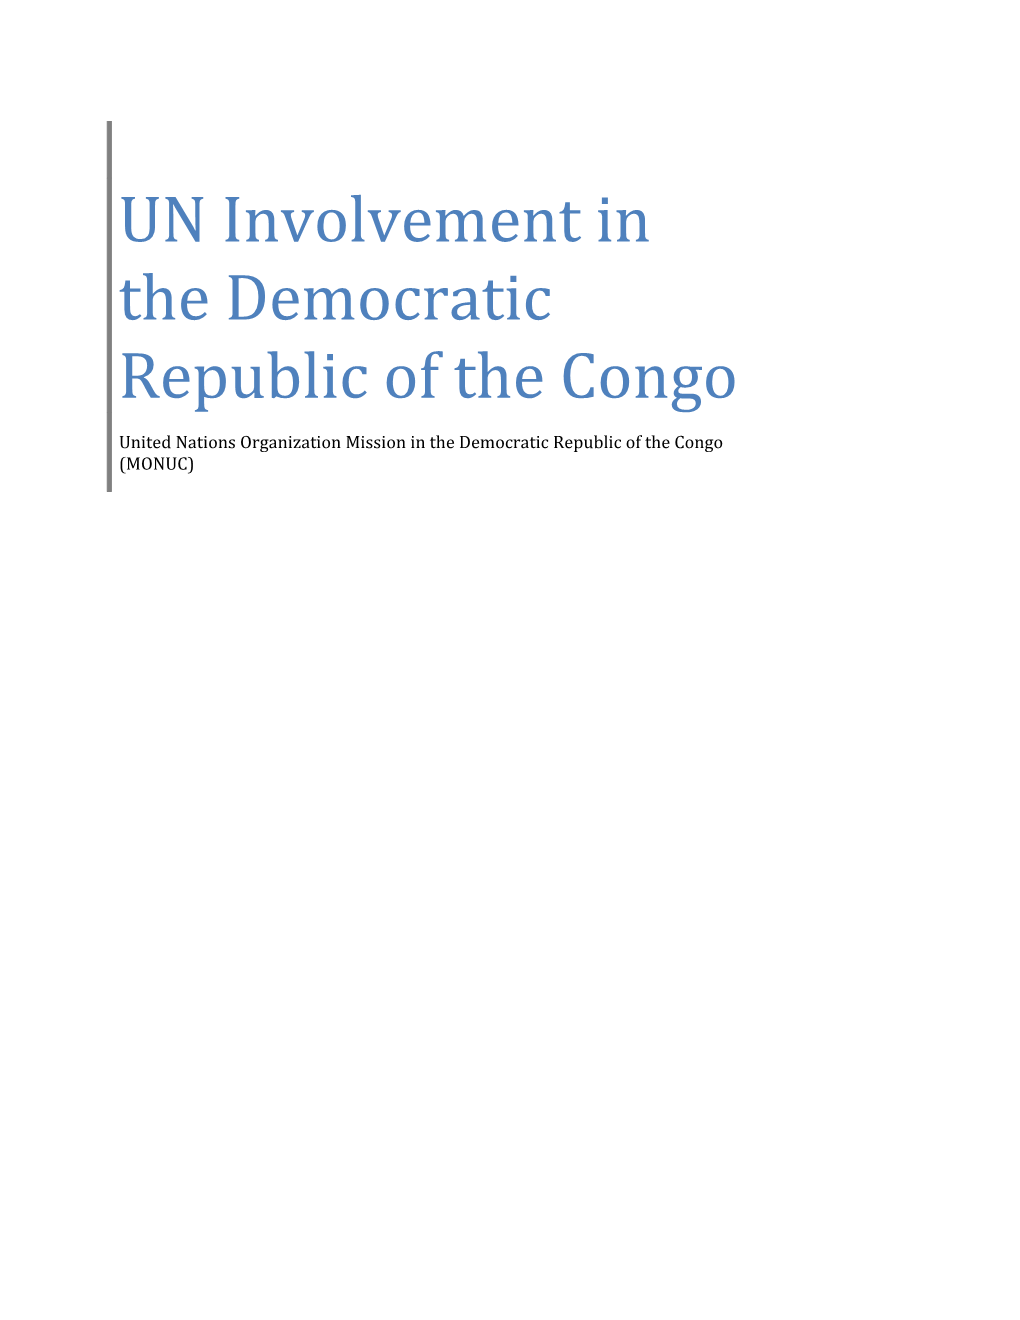 UN Involvement In The Democratic Republic Of The Congo